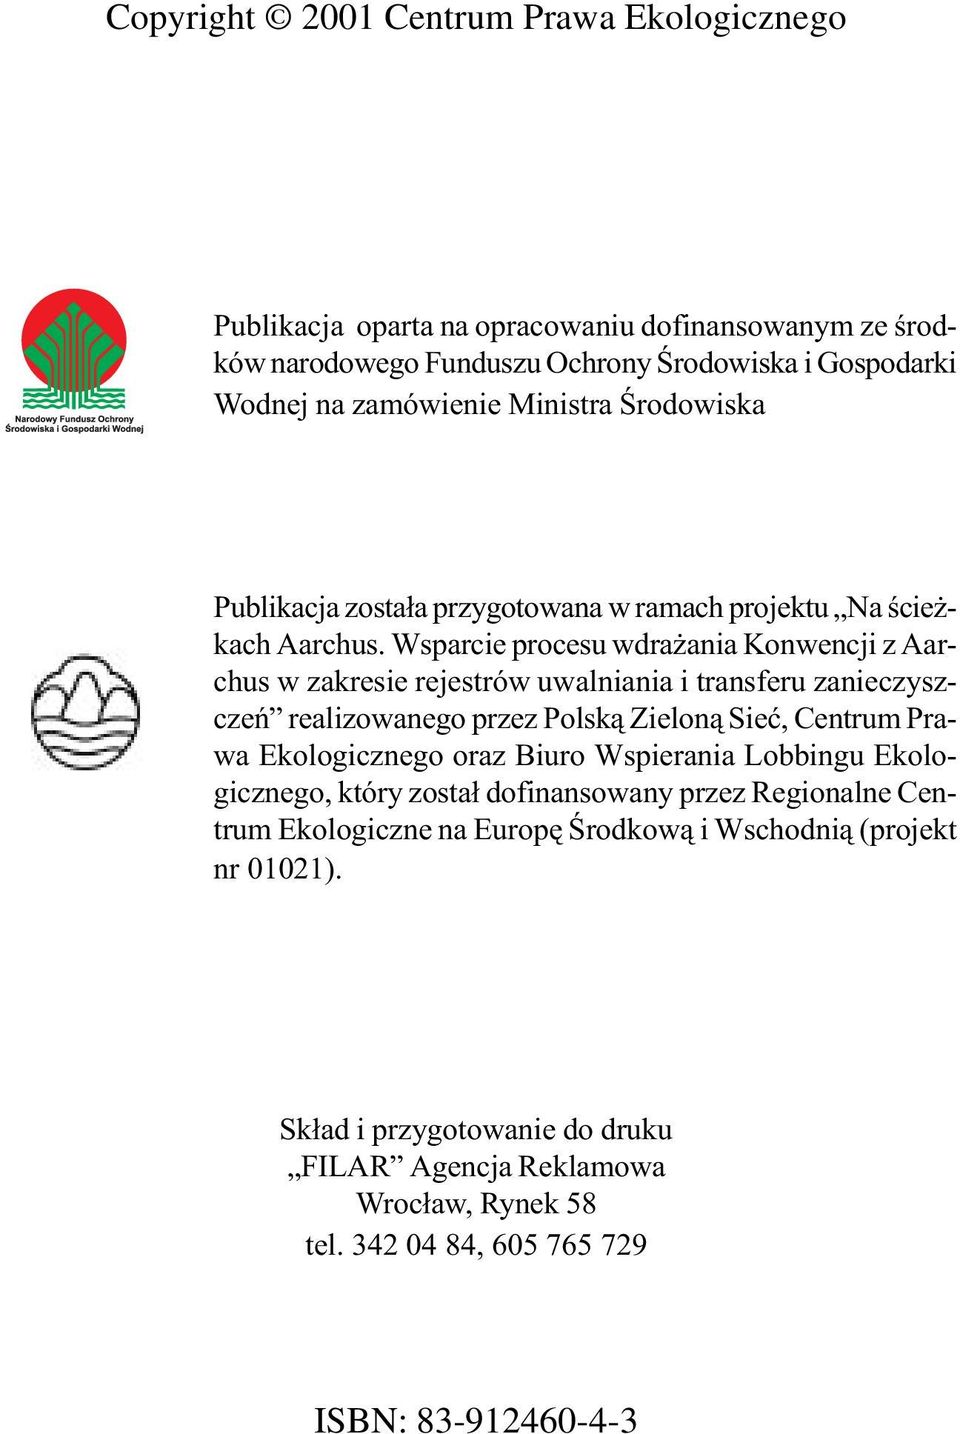 Wsparcie procesu wdrażania Konwencji z Aarchus w zakresie rejestrów uwalniania i transferu zanieczyszczeń realizowanego przez Polską Zieloną Sieć, Centrum Prawa Ekologicznego oraz Biuro Wspierania